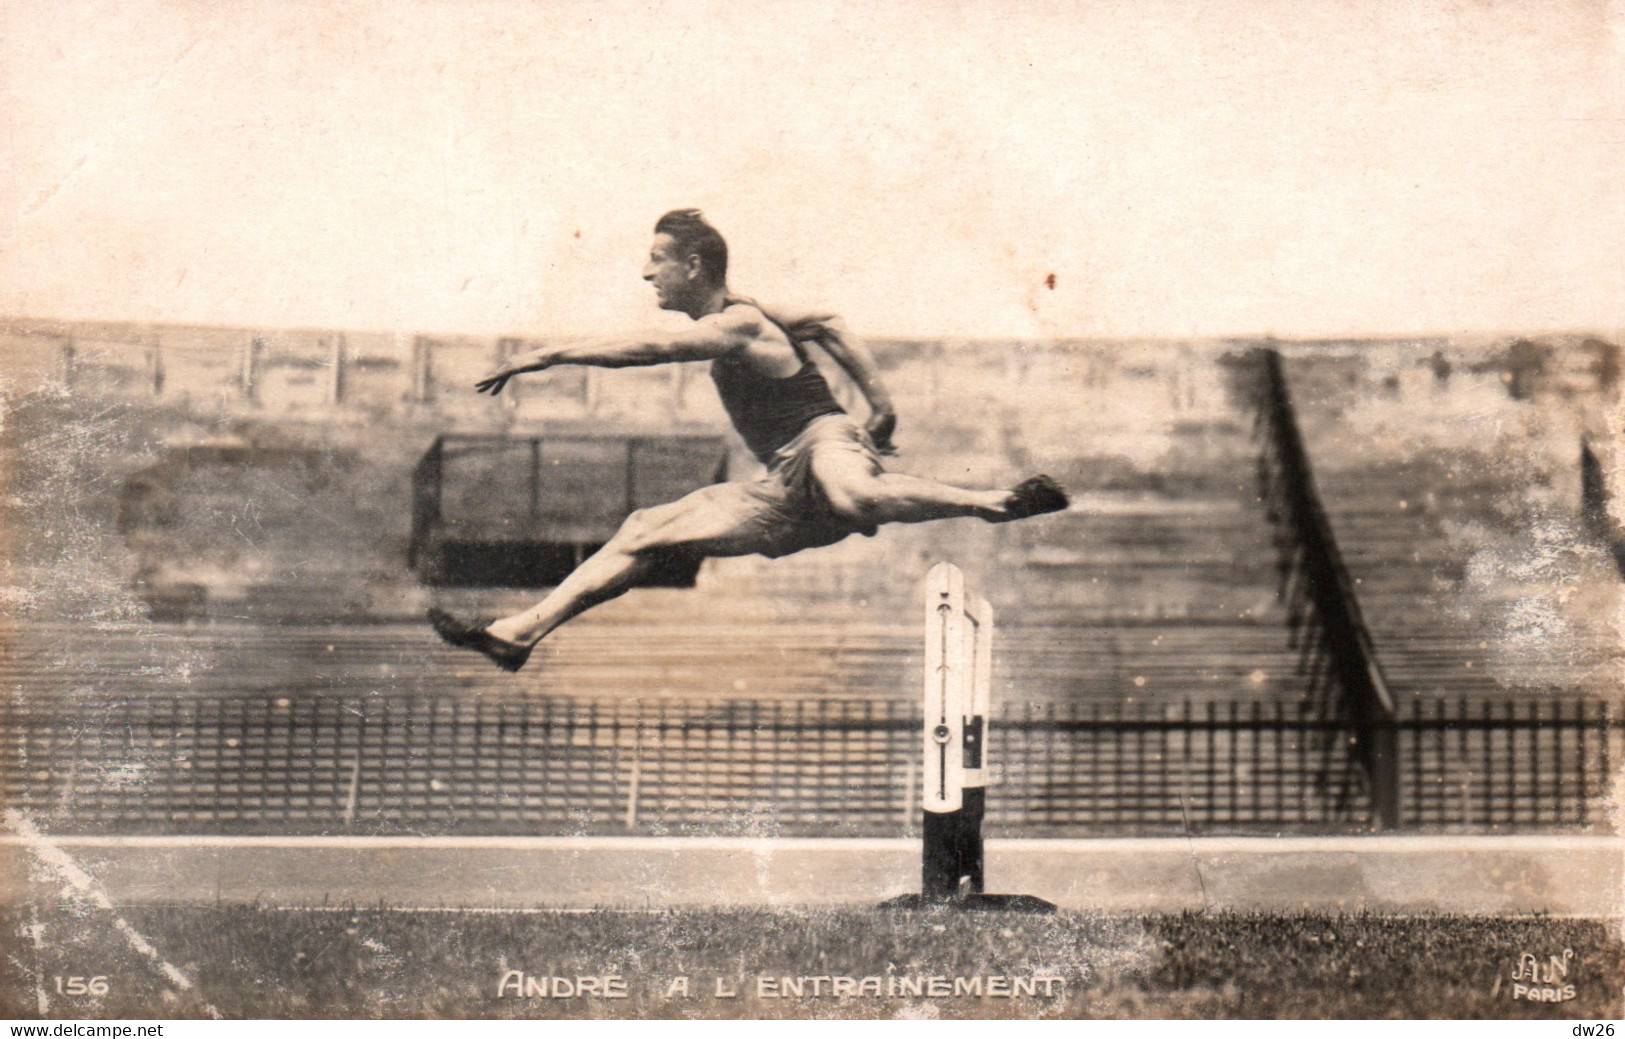 Athlétisme, Course De Haies - Géo André à L'Entrainement - Edition Noyer - Carte A.N. N° 156 Non Circulée - Athletics